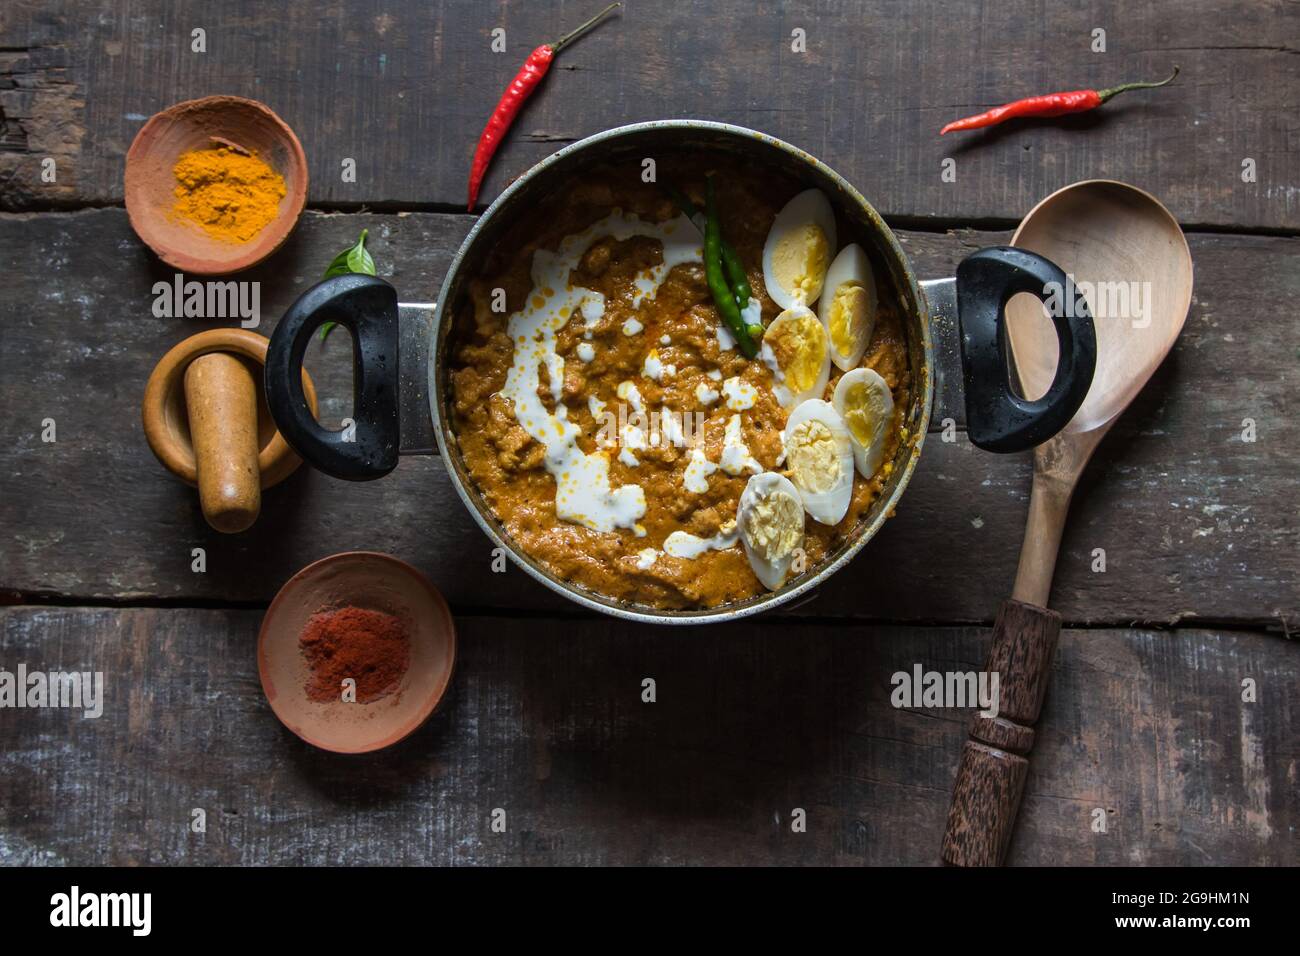 Bharta de poulet préparé avec du poulet râpé, des œufs, du beurre, de la crème et des épices indiennes. Un plat de poulet riche en sauce épicée. Vue de dessus. Banque D'Images